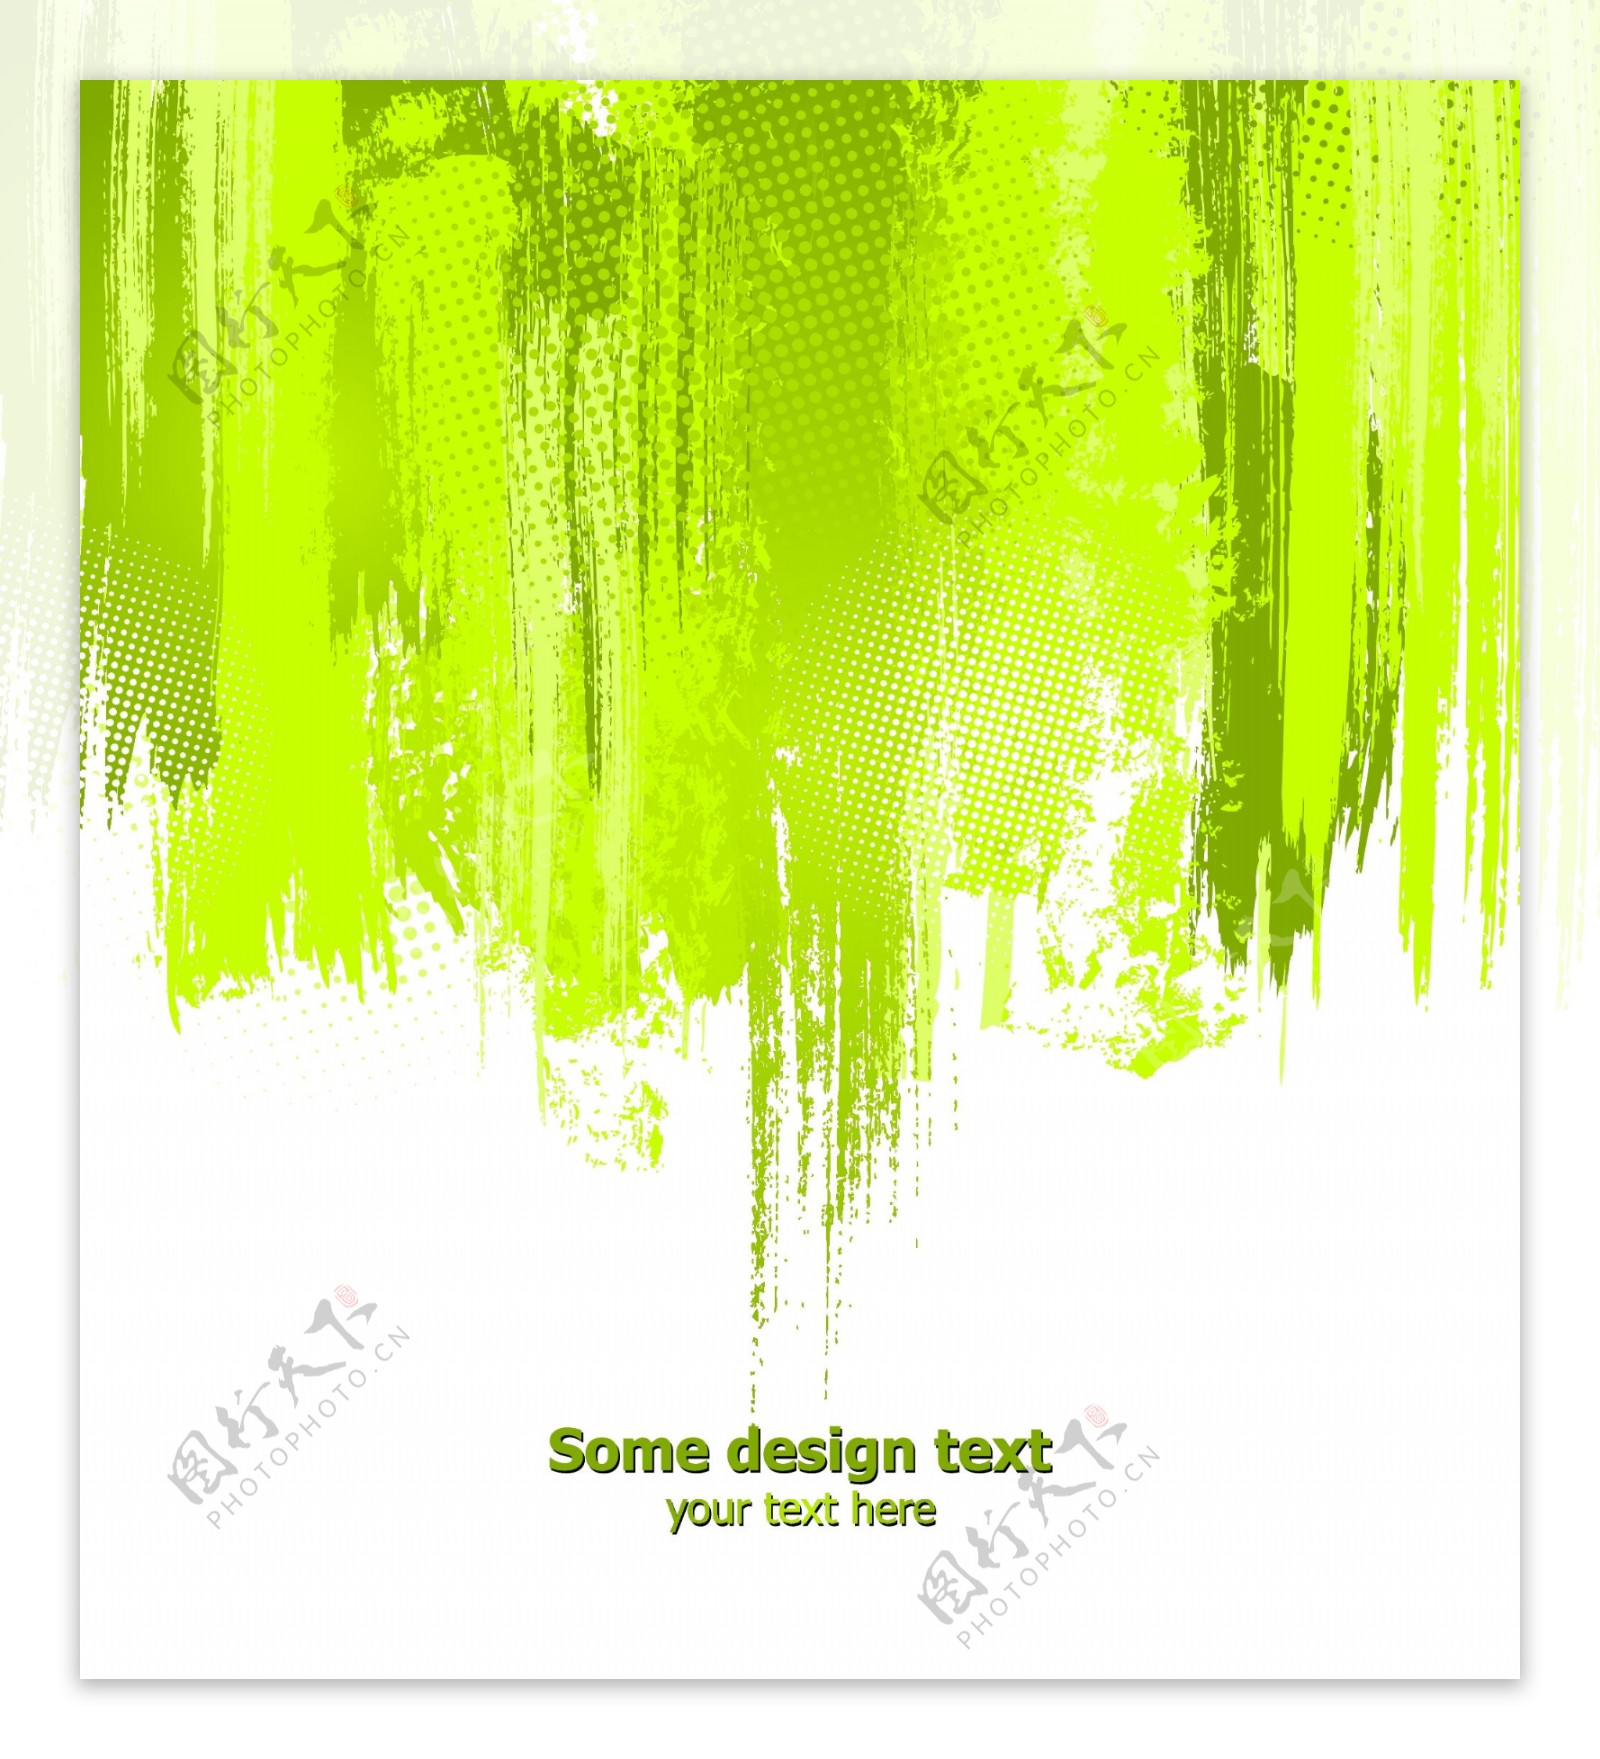 绿色整体泼墨效果广告素材